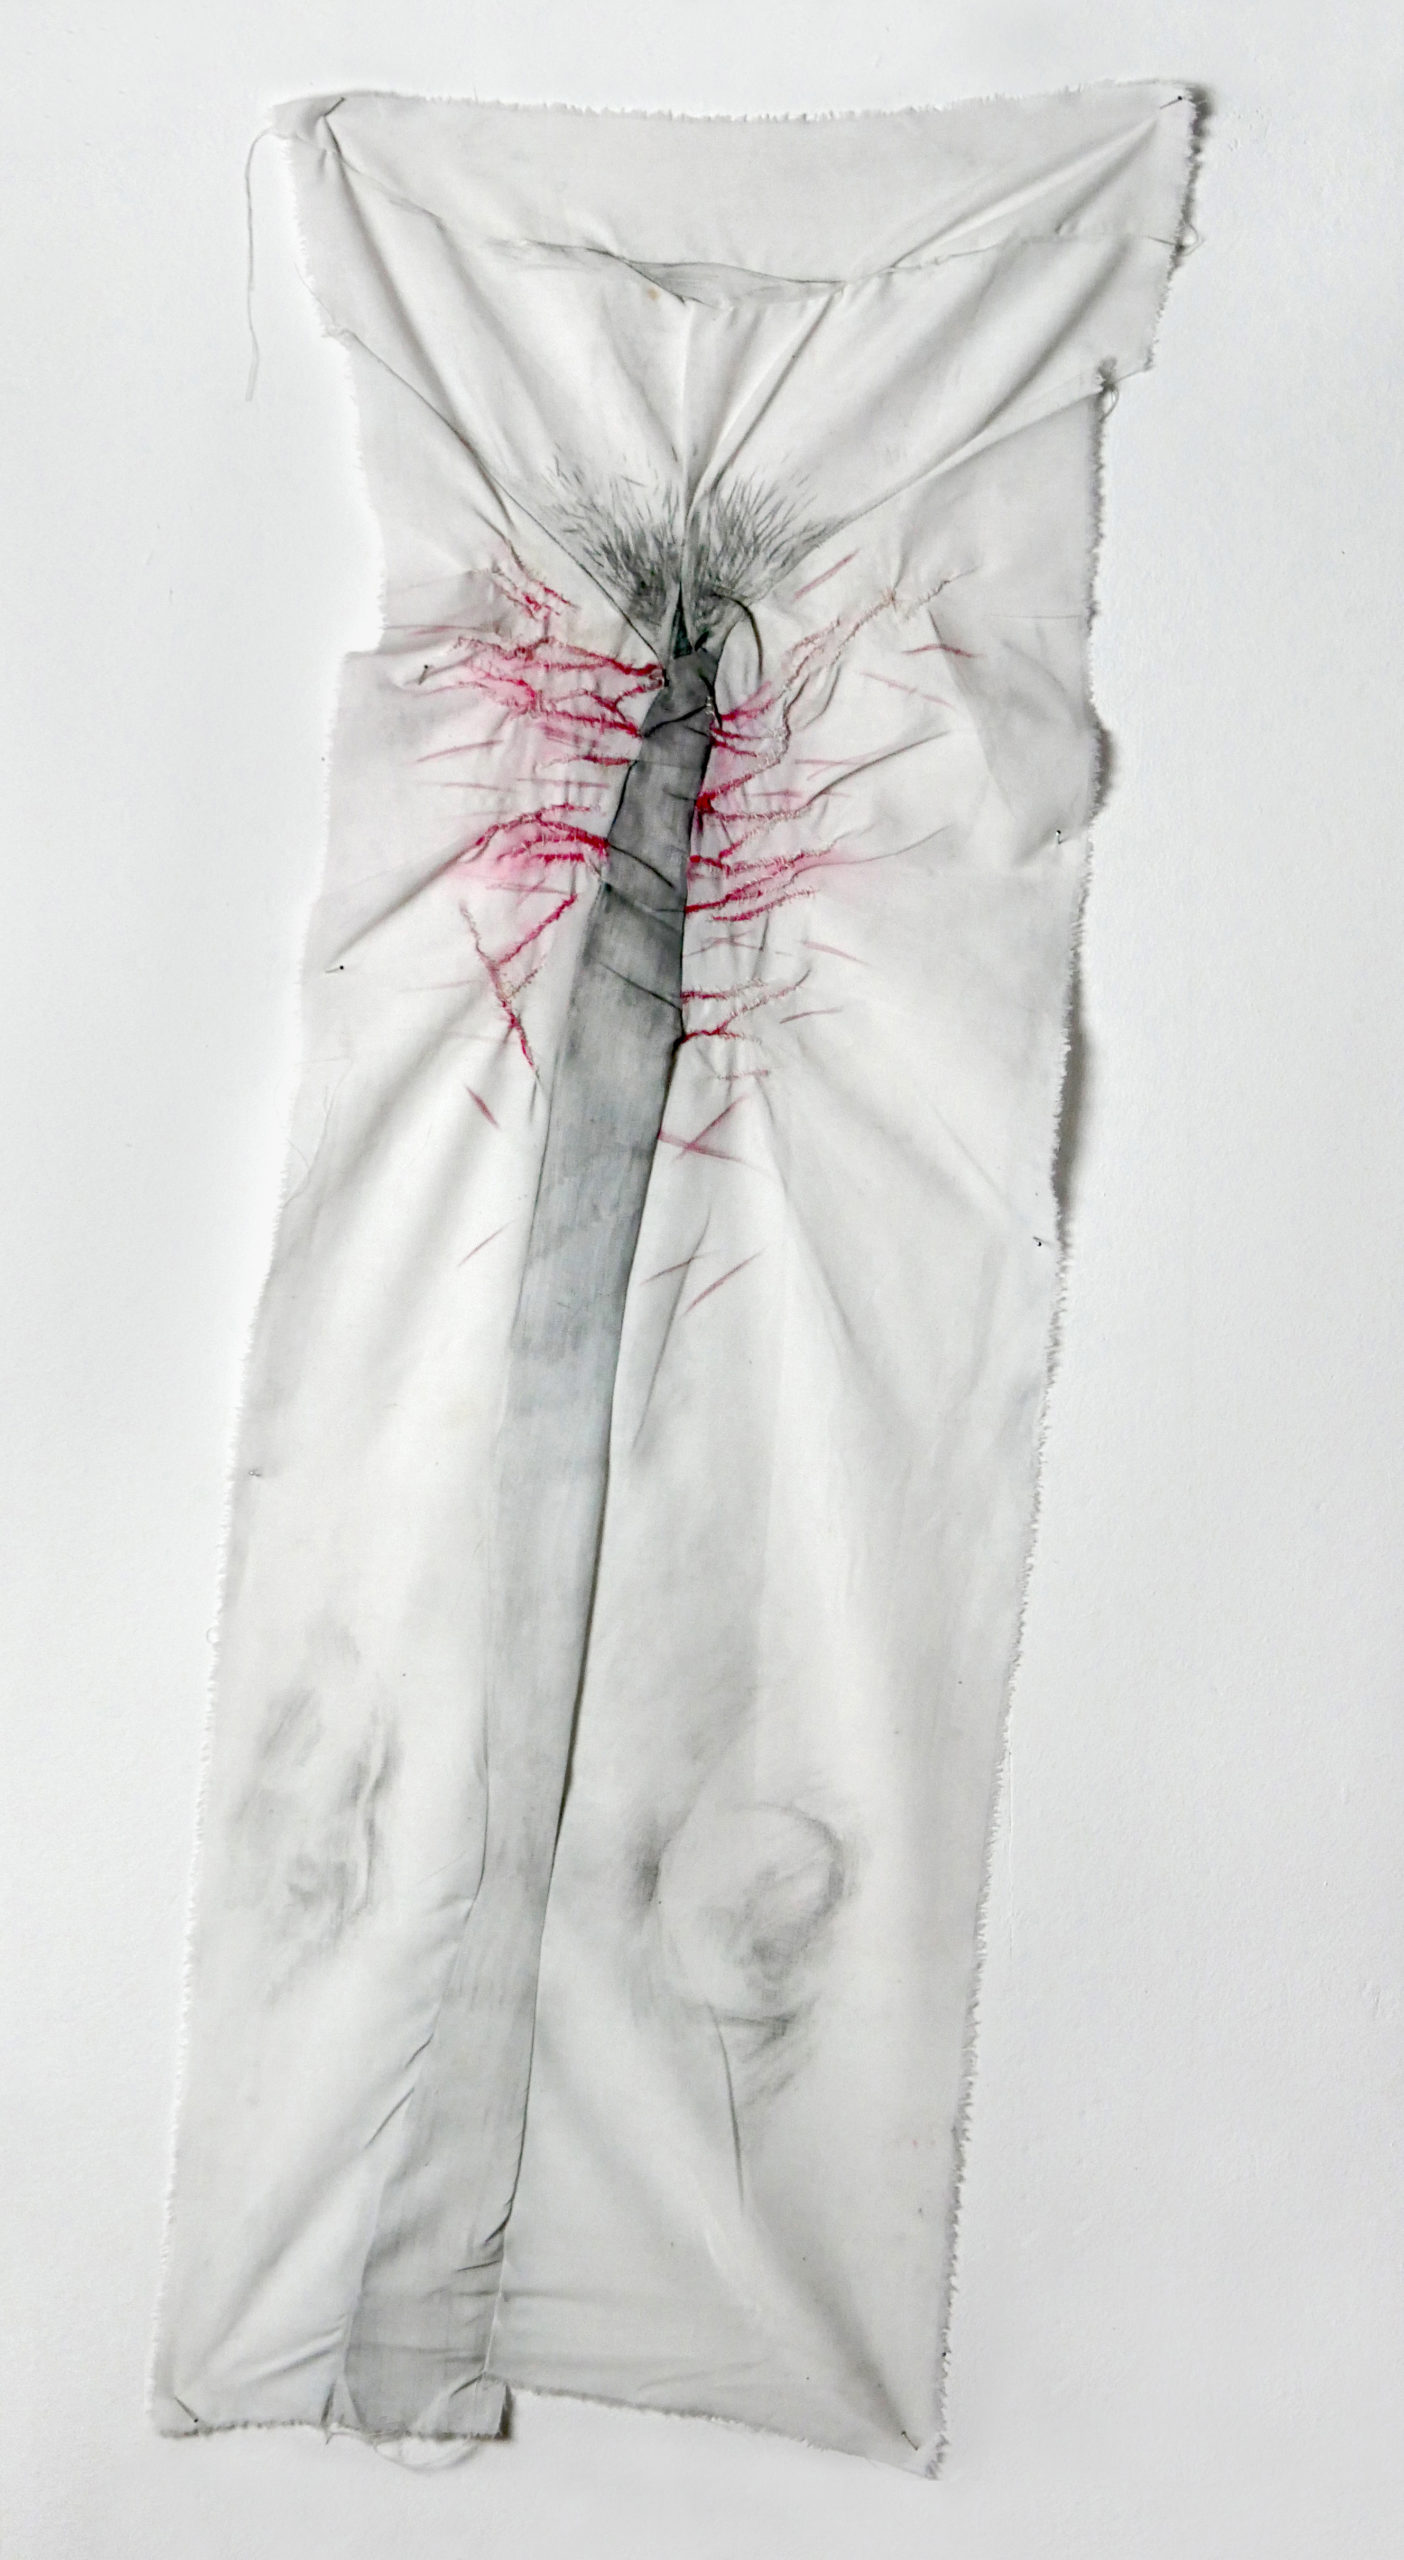 całun II, tkanina bawełniana, tusz, ołówek, kredka, elementy wyszywane, 120 x 40 cm